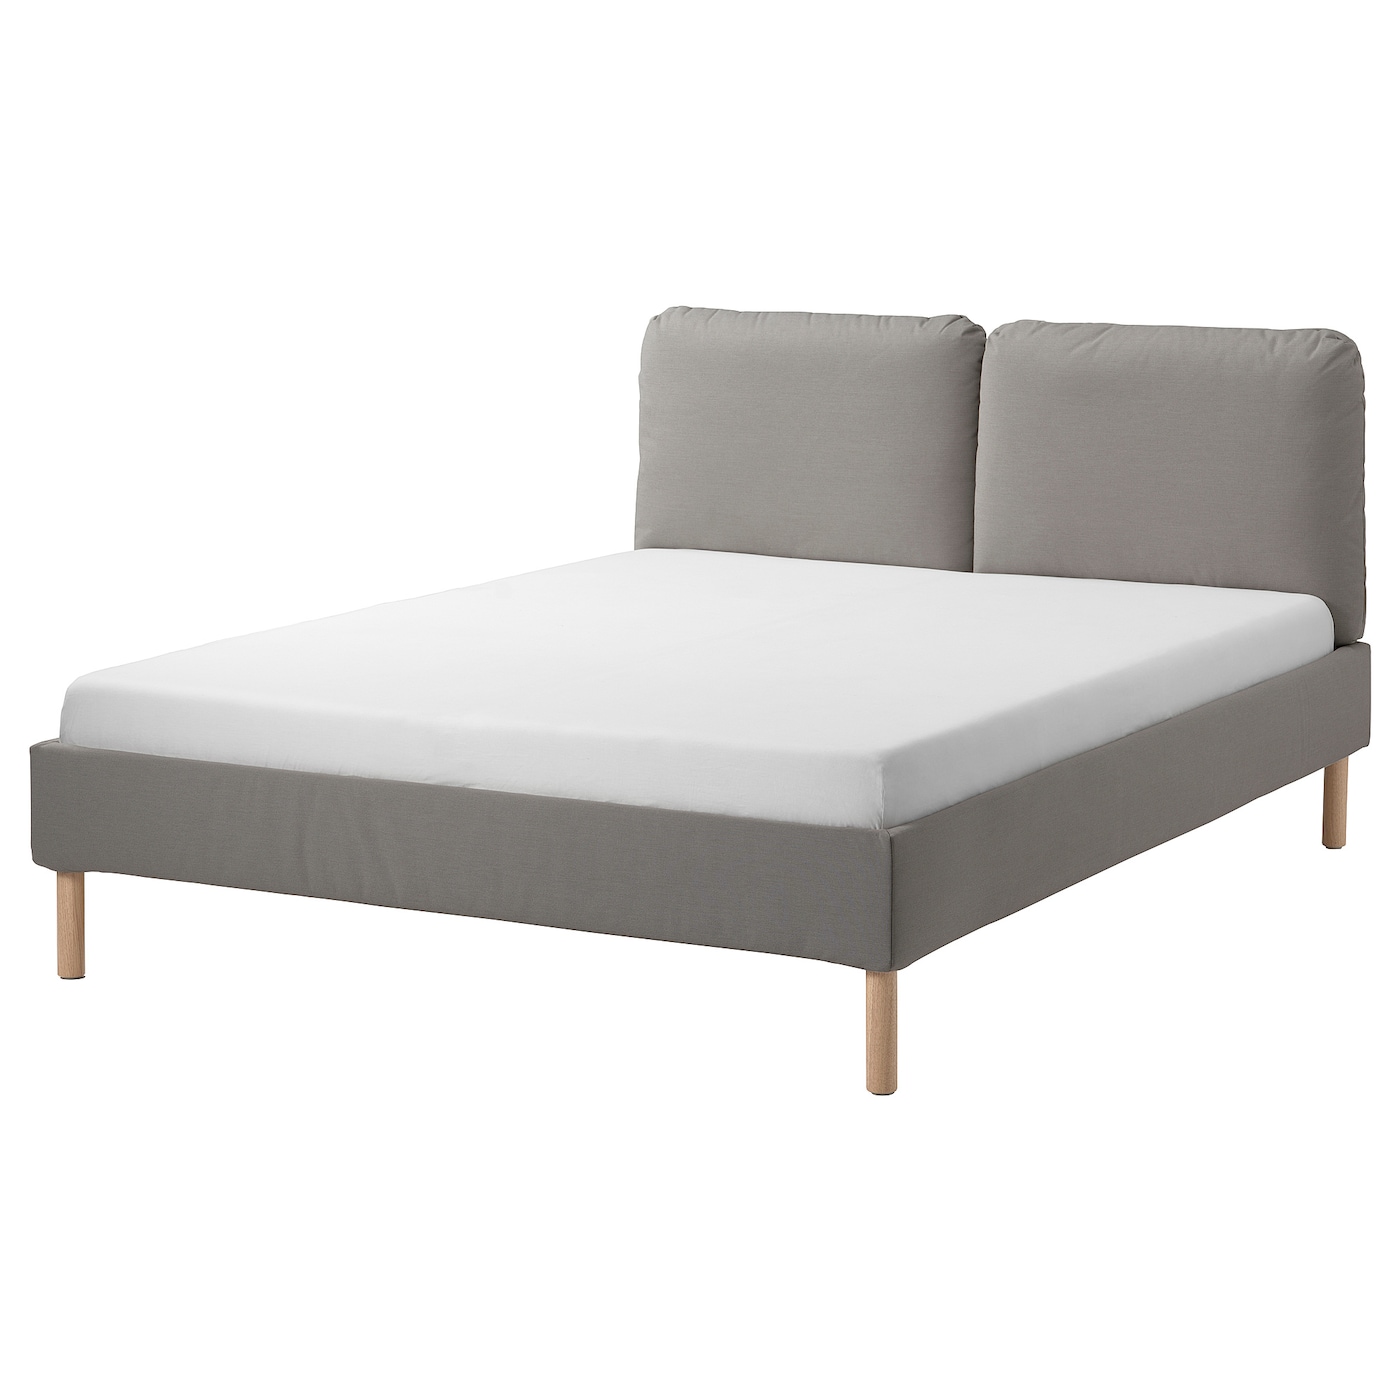 Каркас кровати с мягкой обивкой - IKEA SAGESUND, 200х140 см, серый, САГЕСУНД ИКЕА